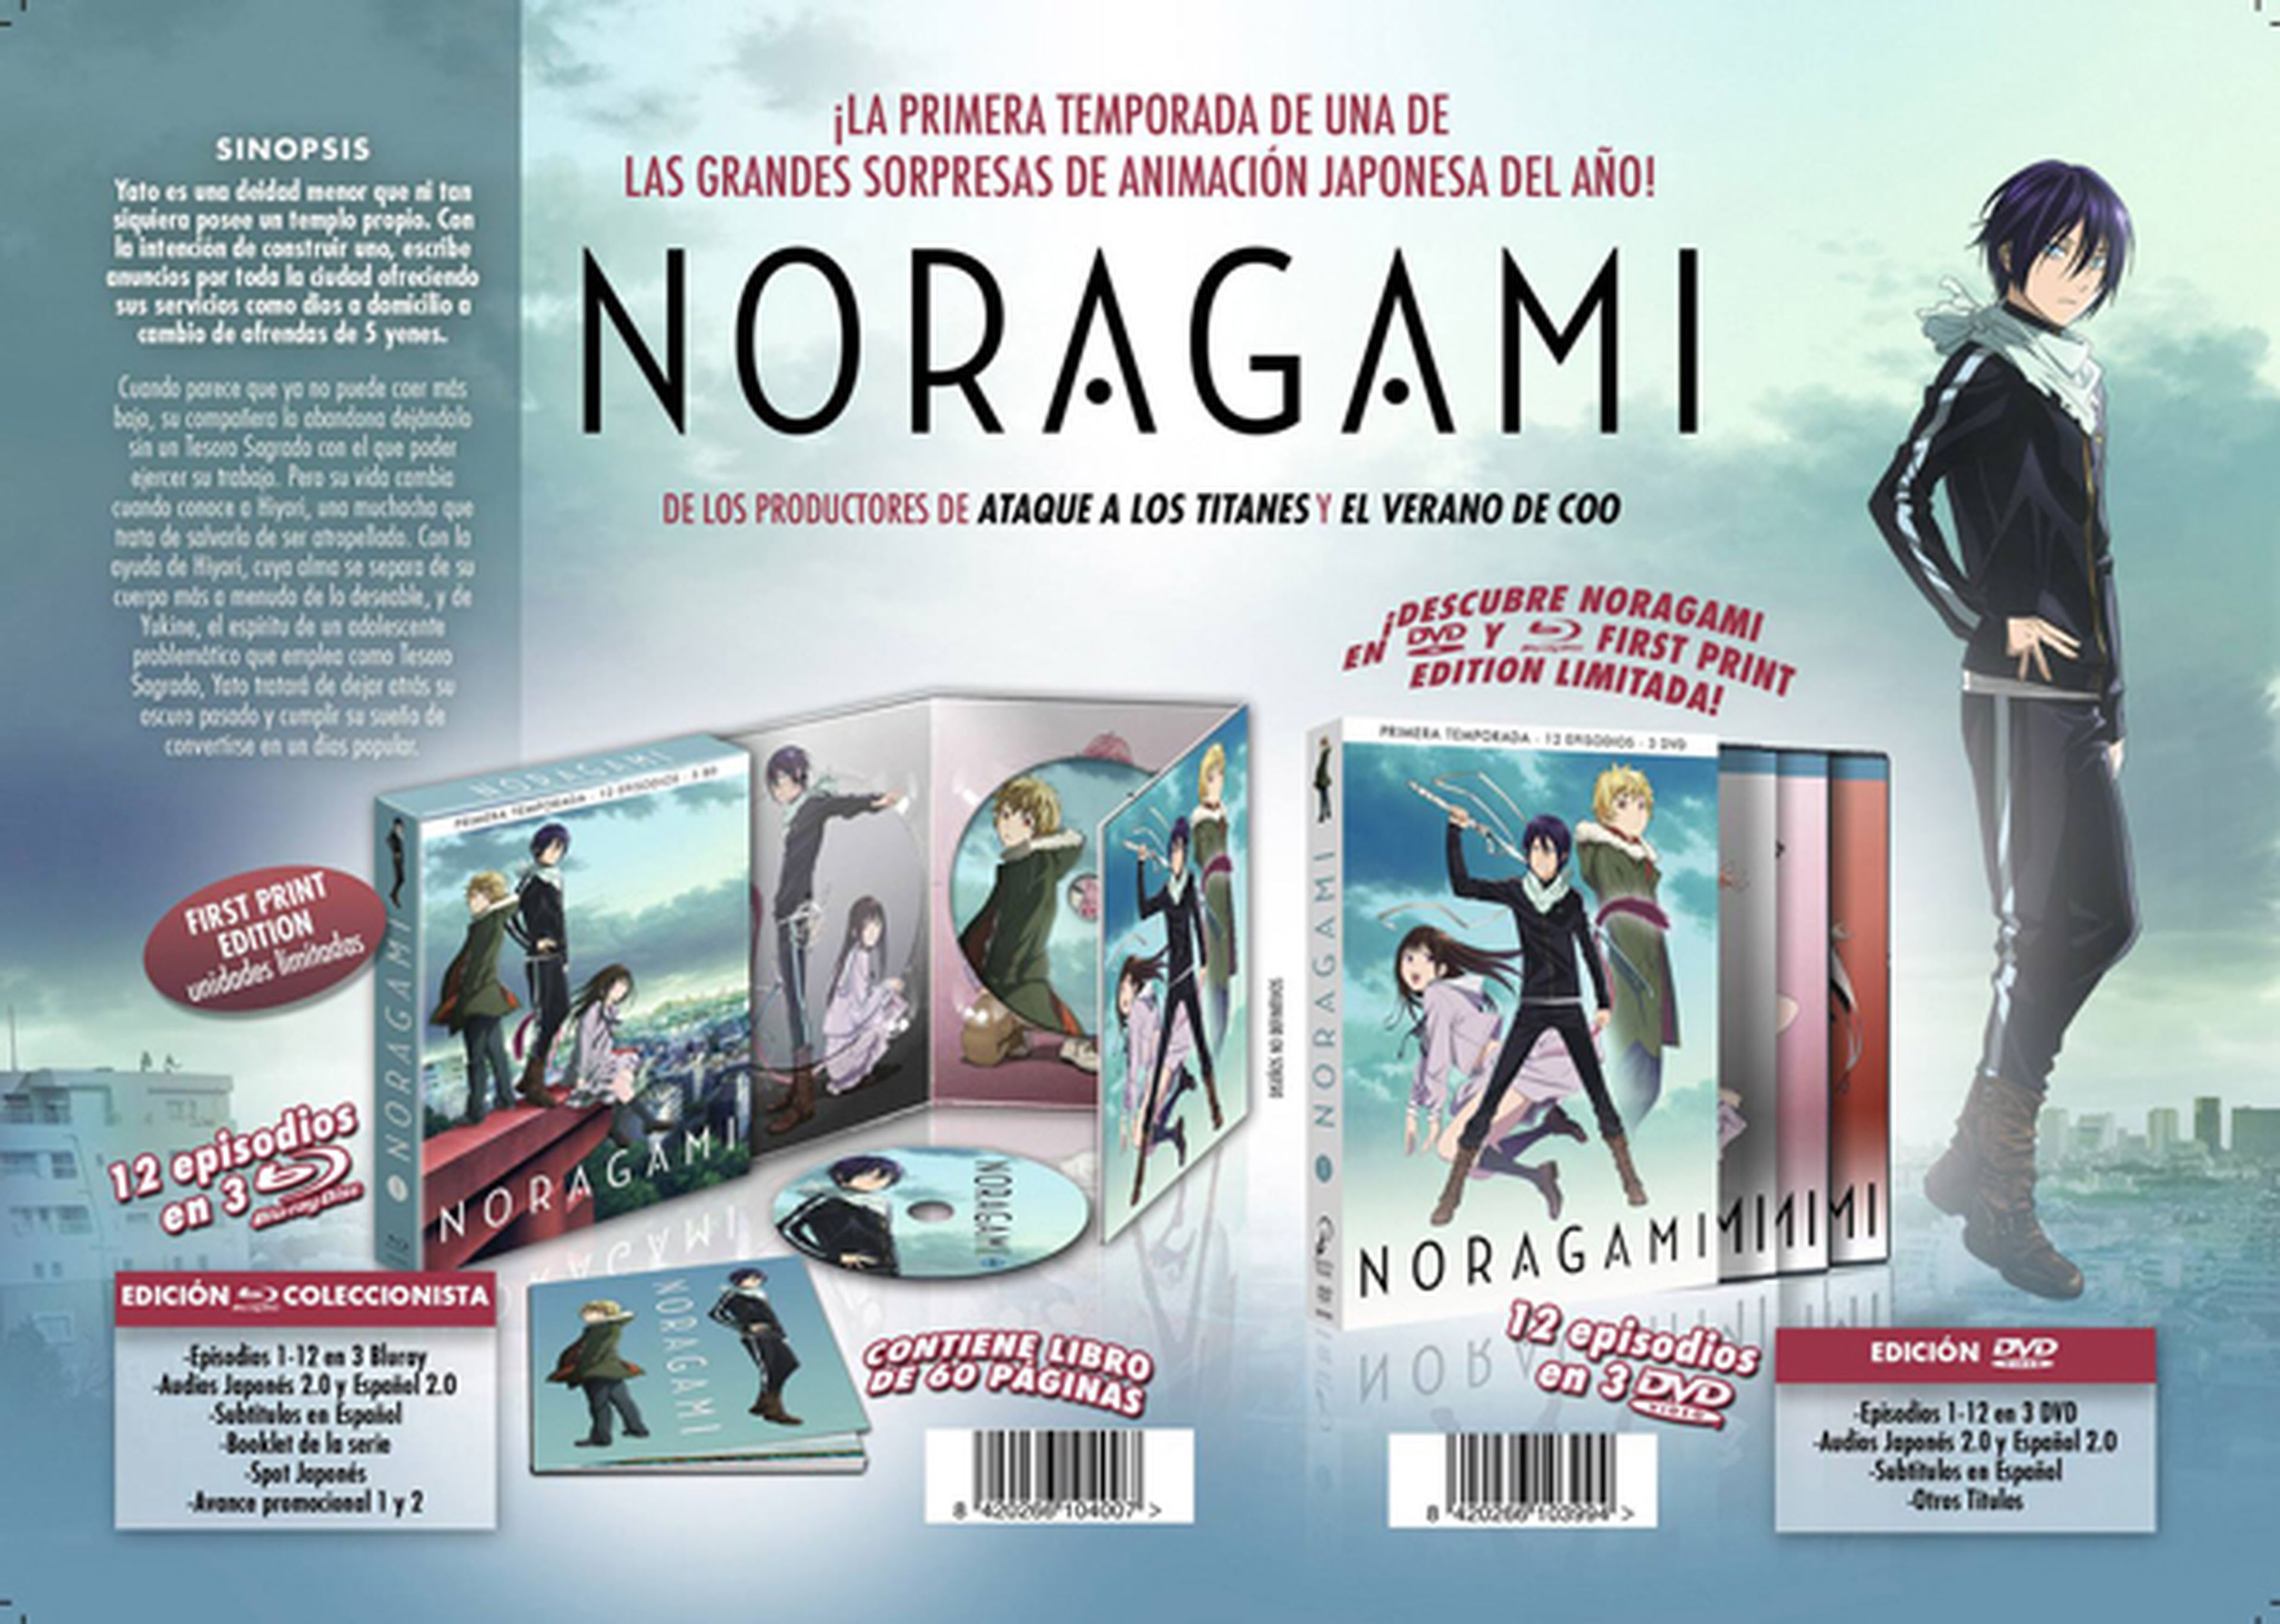 Noragami saldrá en DVD y BD en mayo